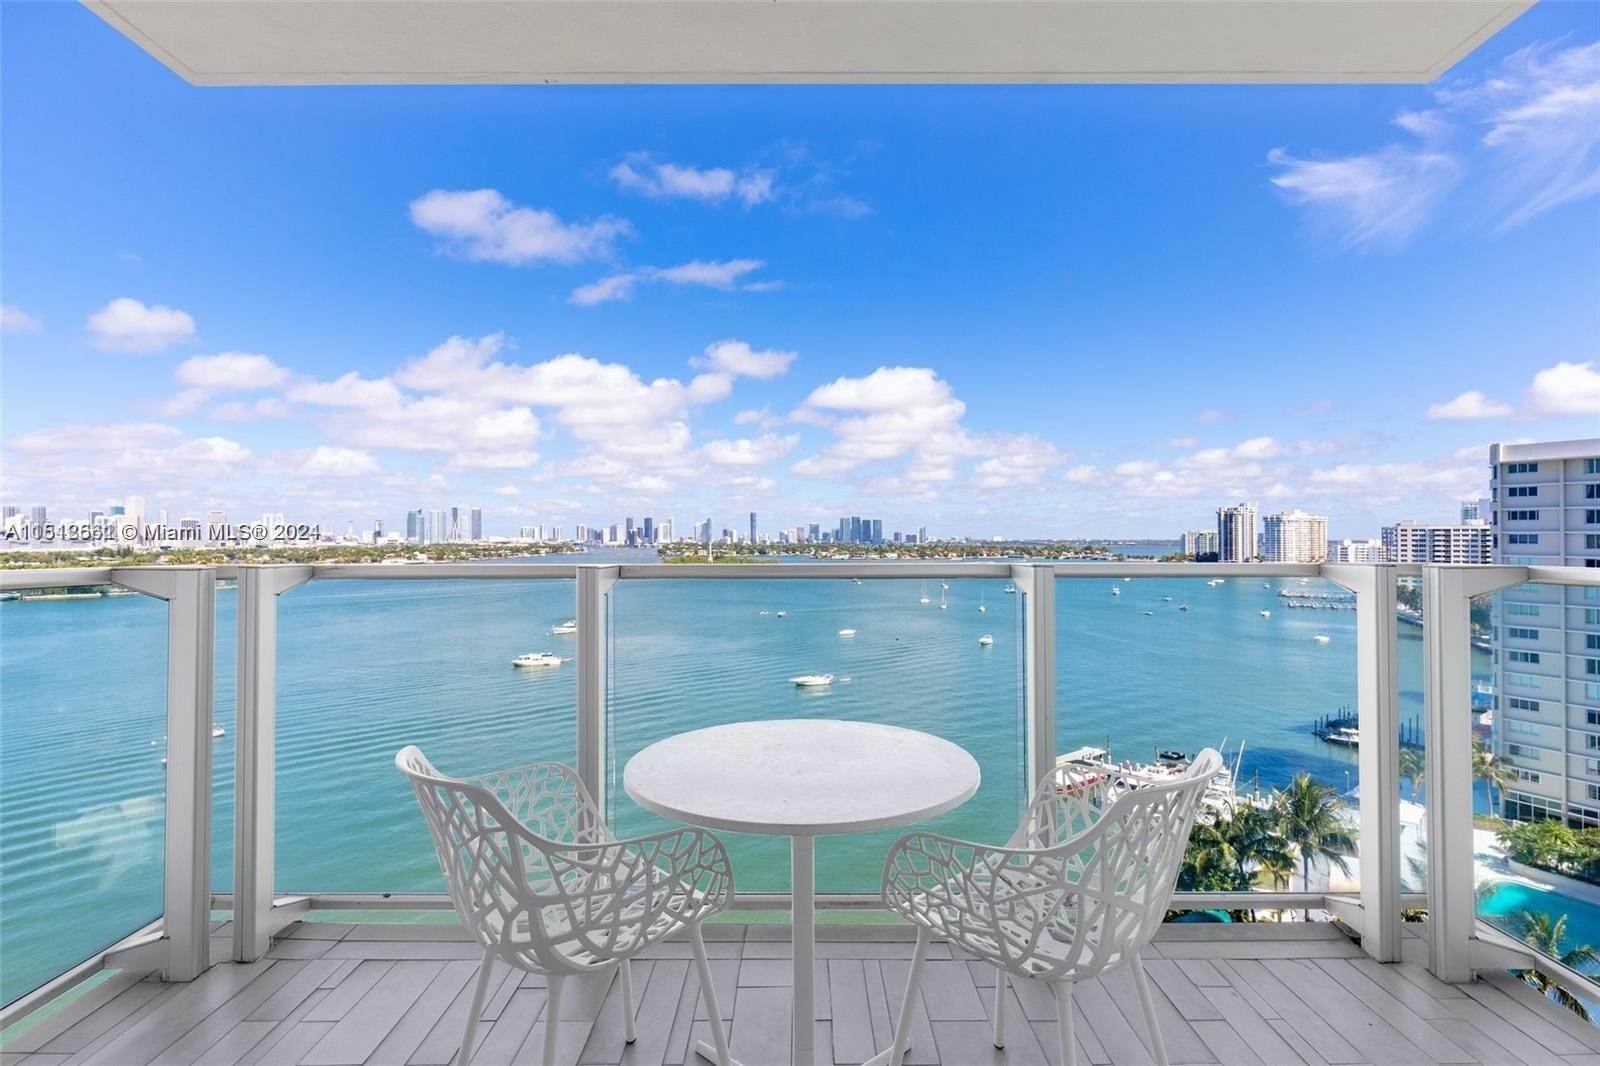 Condominium for Sale at West Avenue, Miami Beach, FL 33139